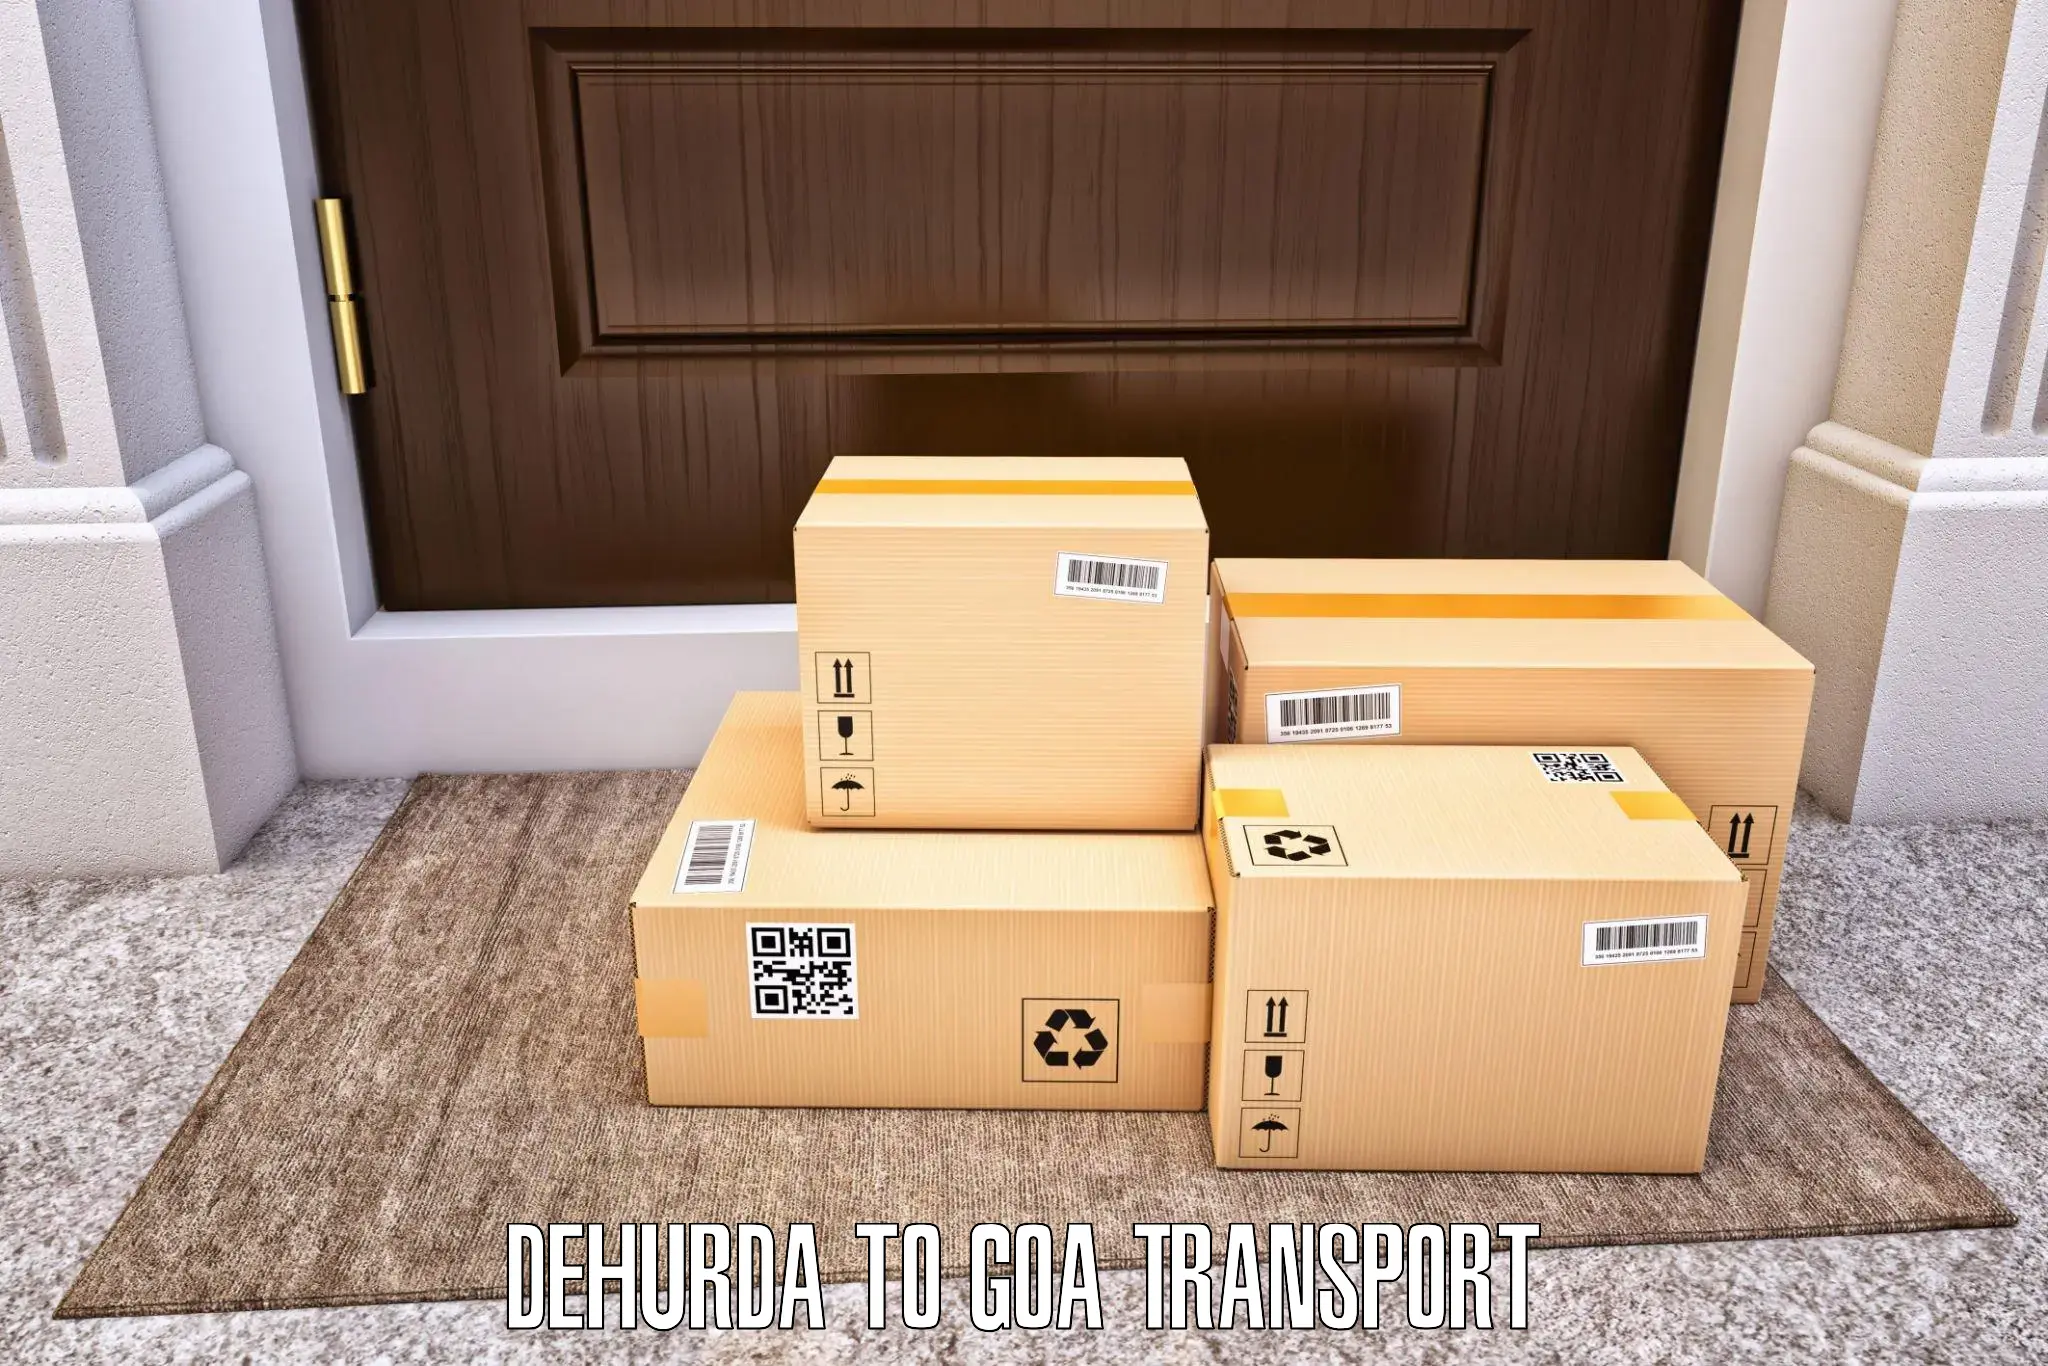 Transport in sharing Dehurda to Vasco da Gama